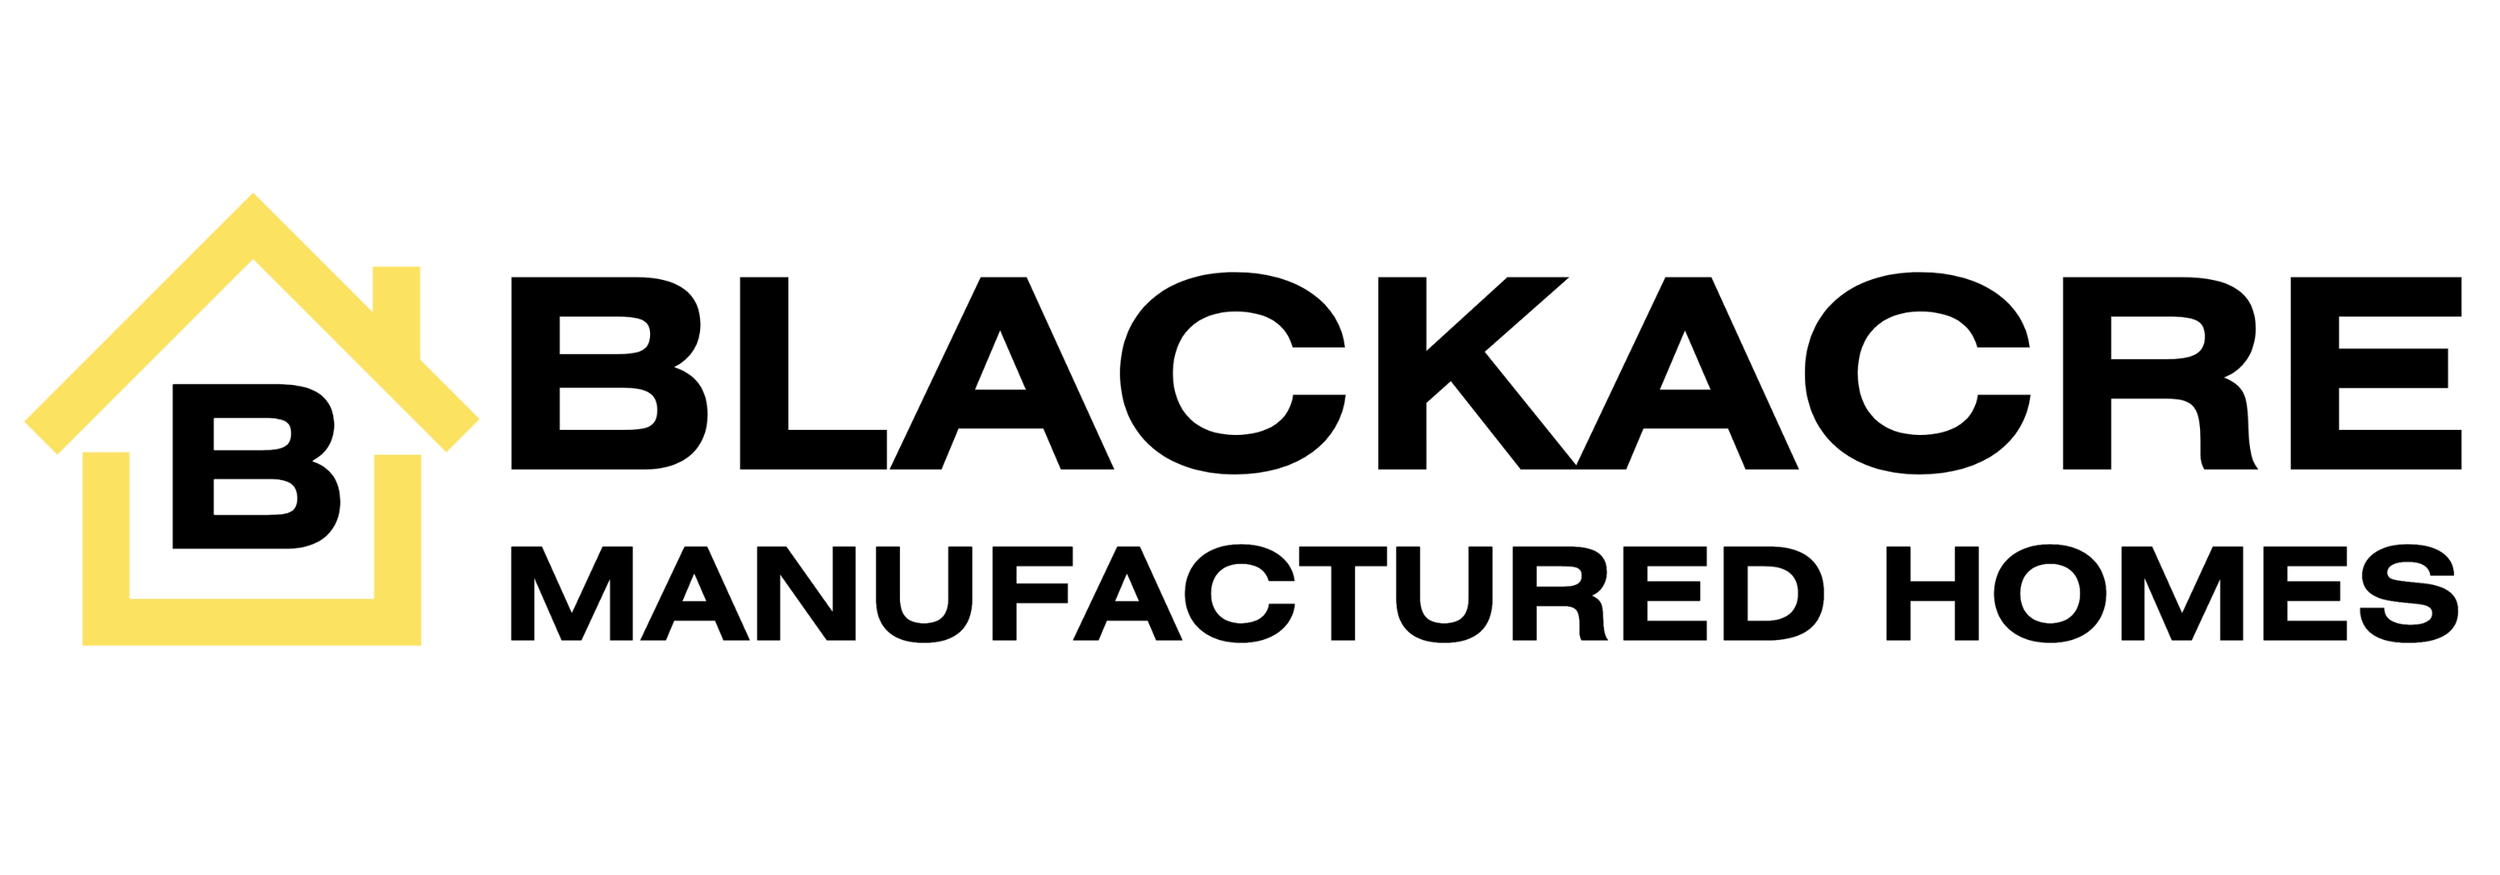 Blackacre Logo.png